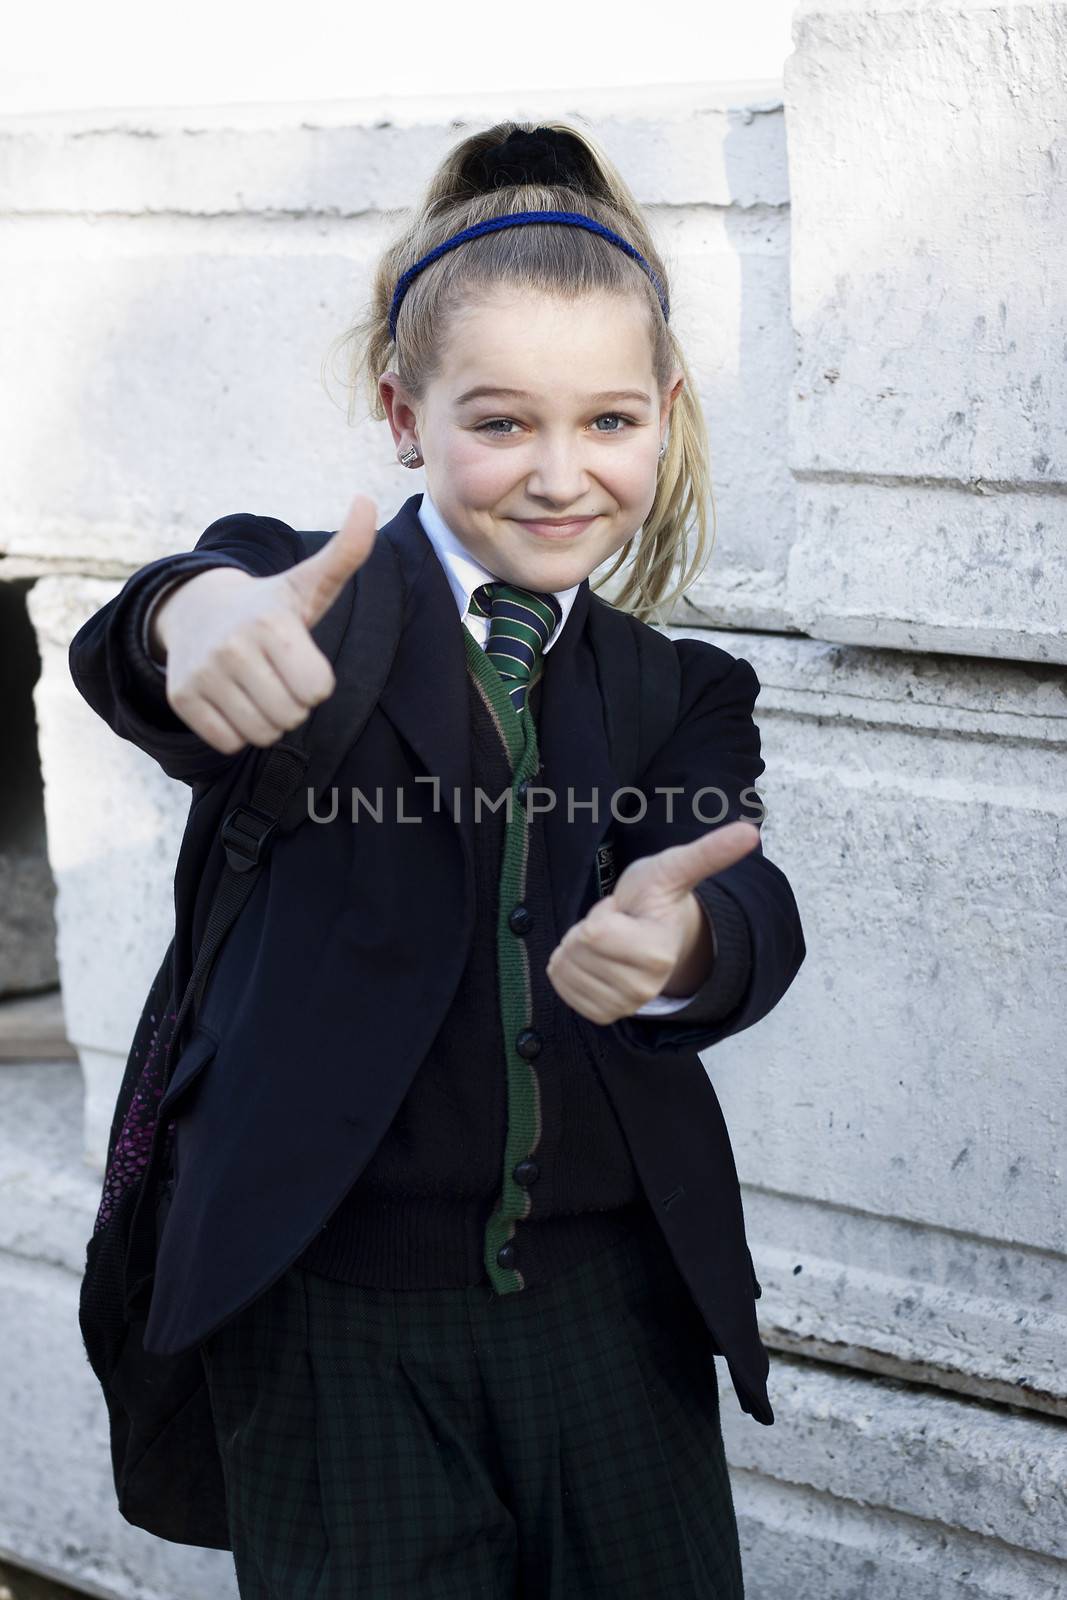 School girl with uniform doing thumbs up, positive feeling